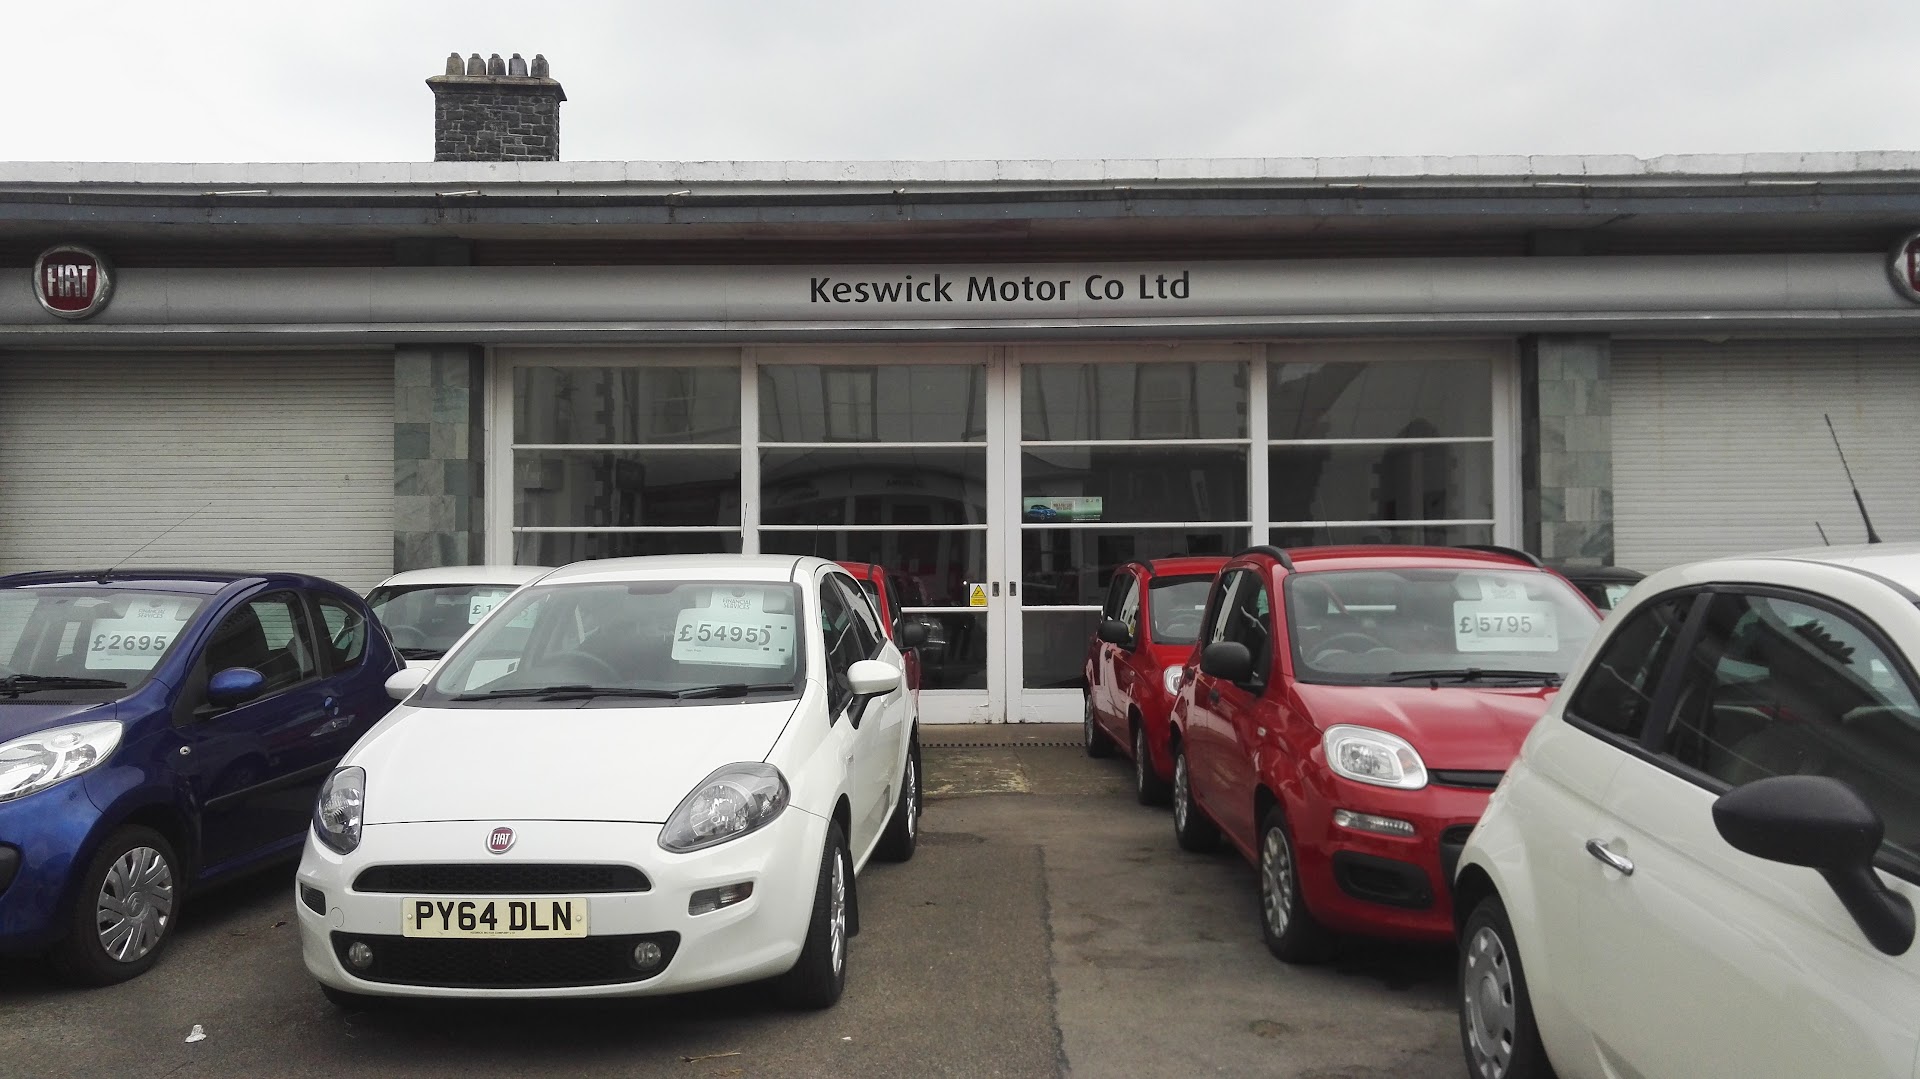 Keswick Motor Co Ltd